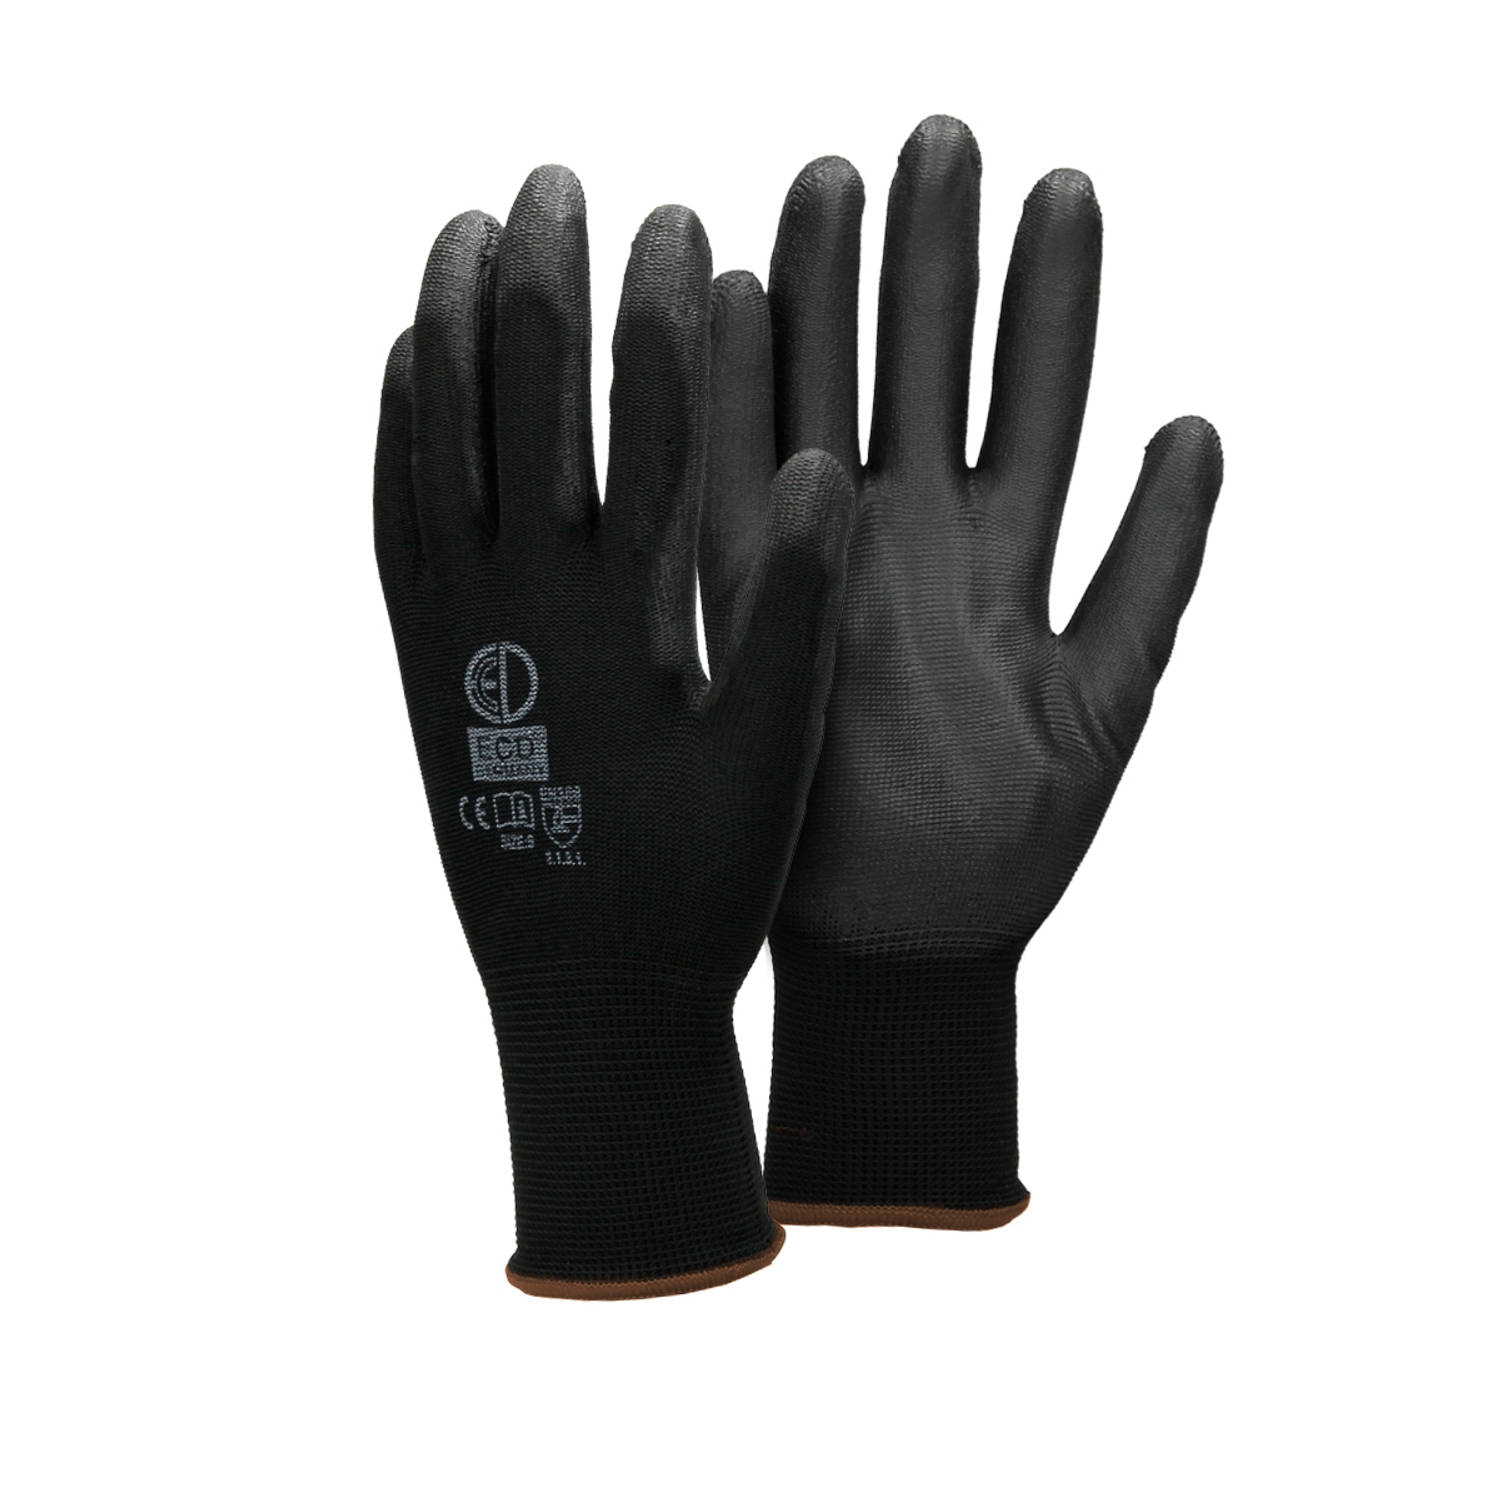 ECD Germany 36 paar werkhandschoenen met PU coating - maat 9-L - zwart - monteurshandschoenen montagehandschoenen beschermende handschoenen tuinhandschoenen - diverse kleuren & mat